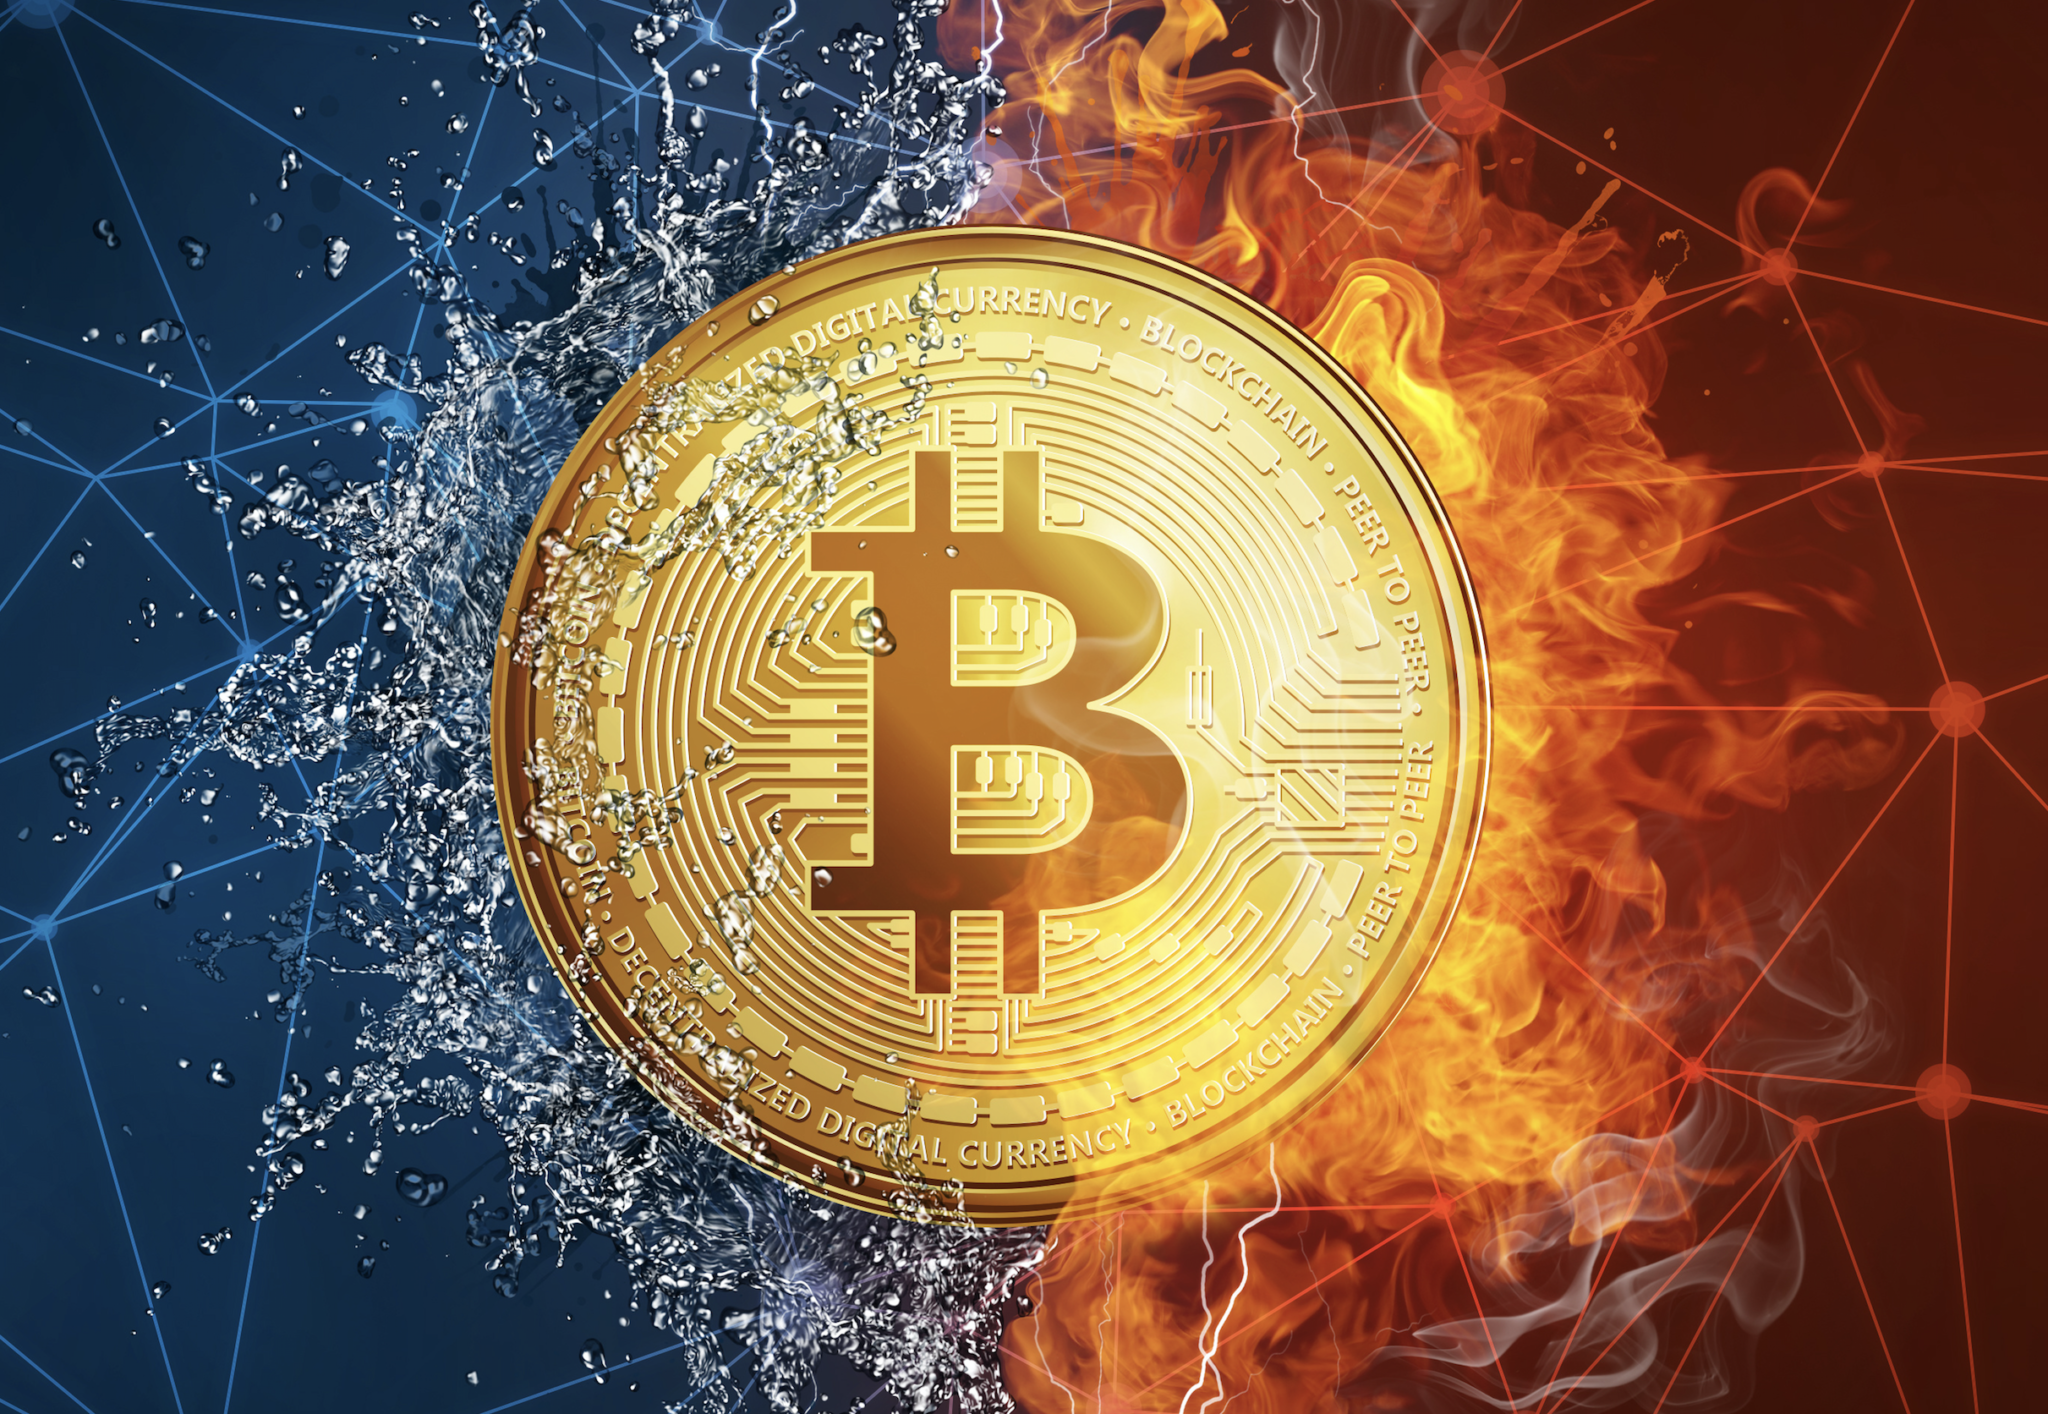 Galaxy Digital CEO Novogratz Predicts $20,000 Bitcoin in 2019